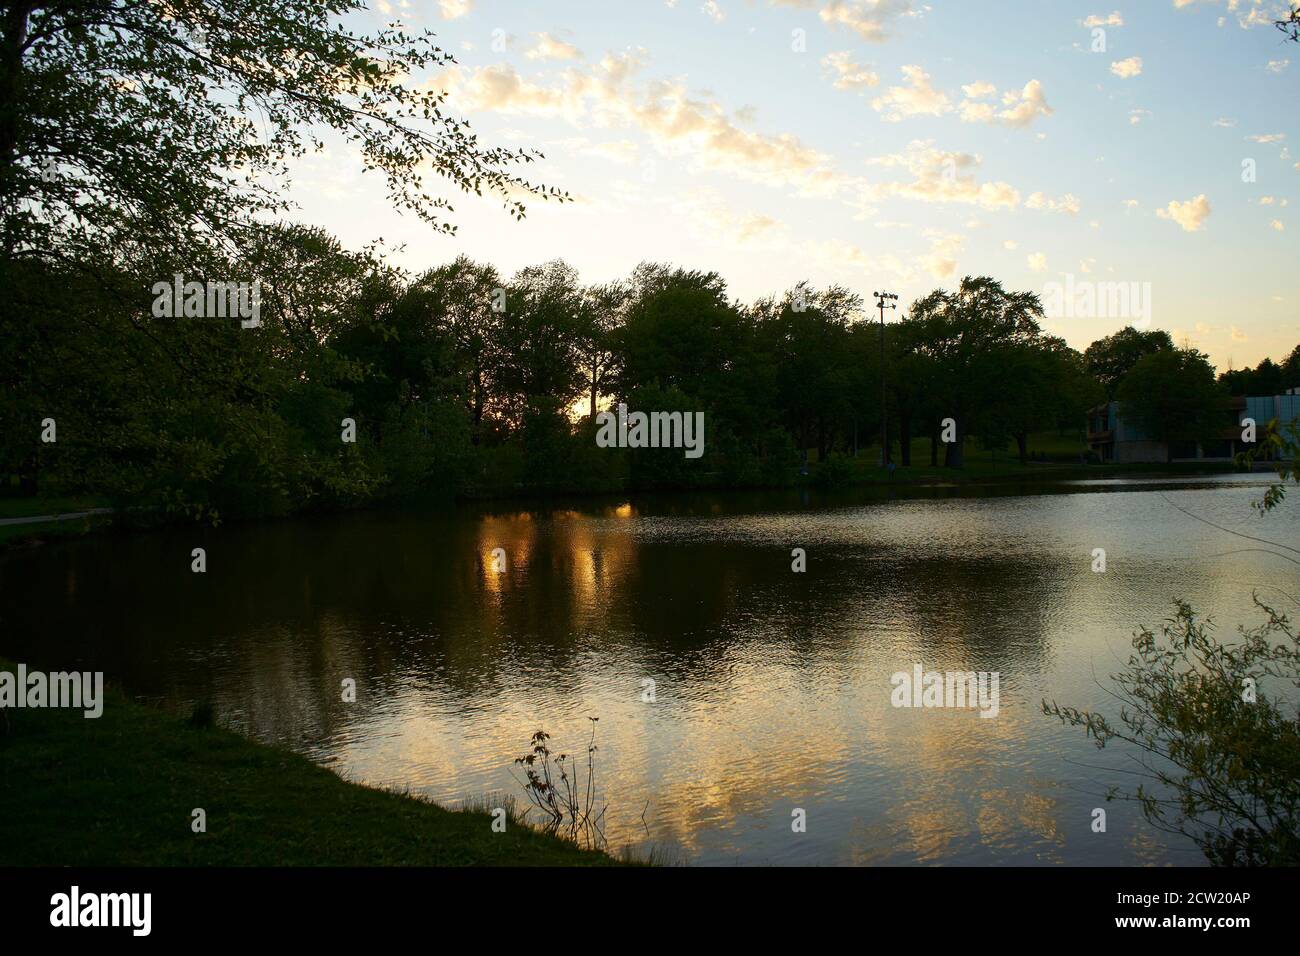 Kosciuszko Park at dusk, Milwaukee Wisconsin. Stock Photo